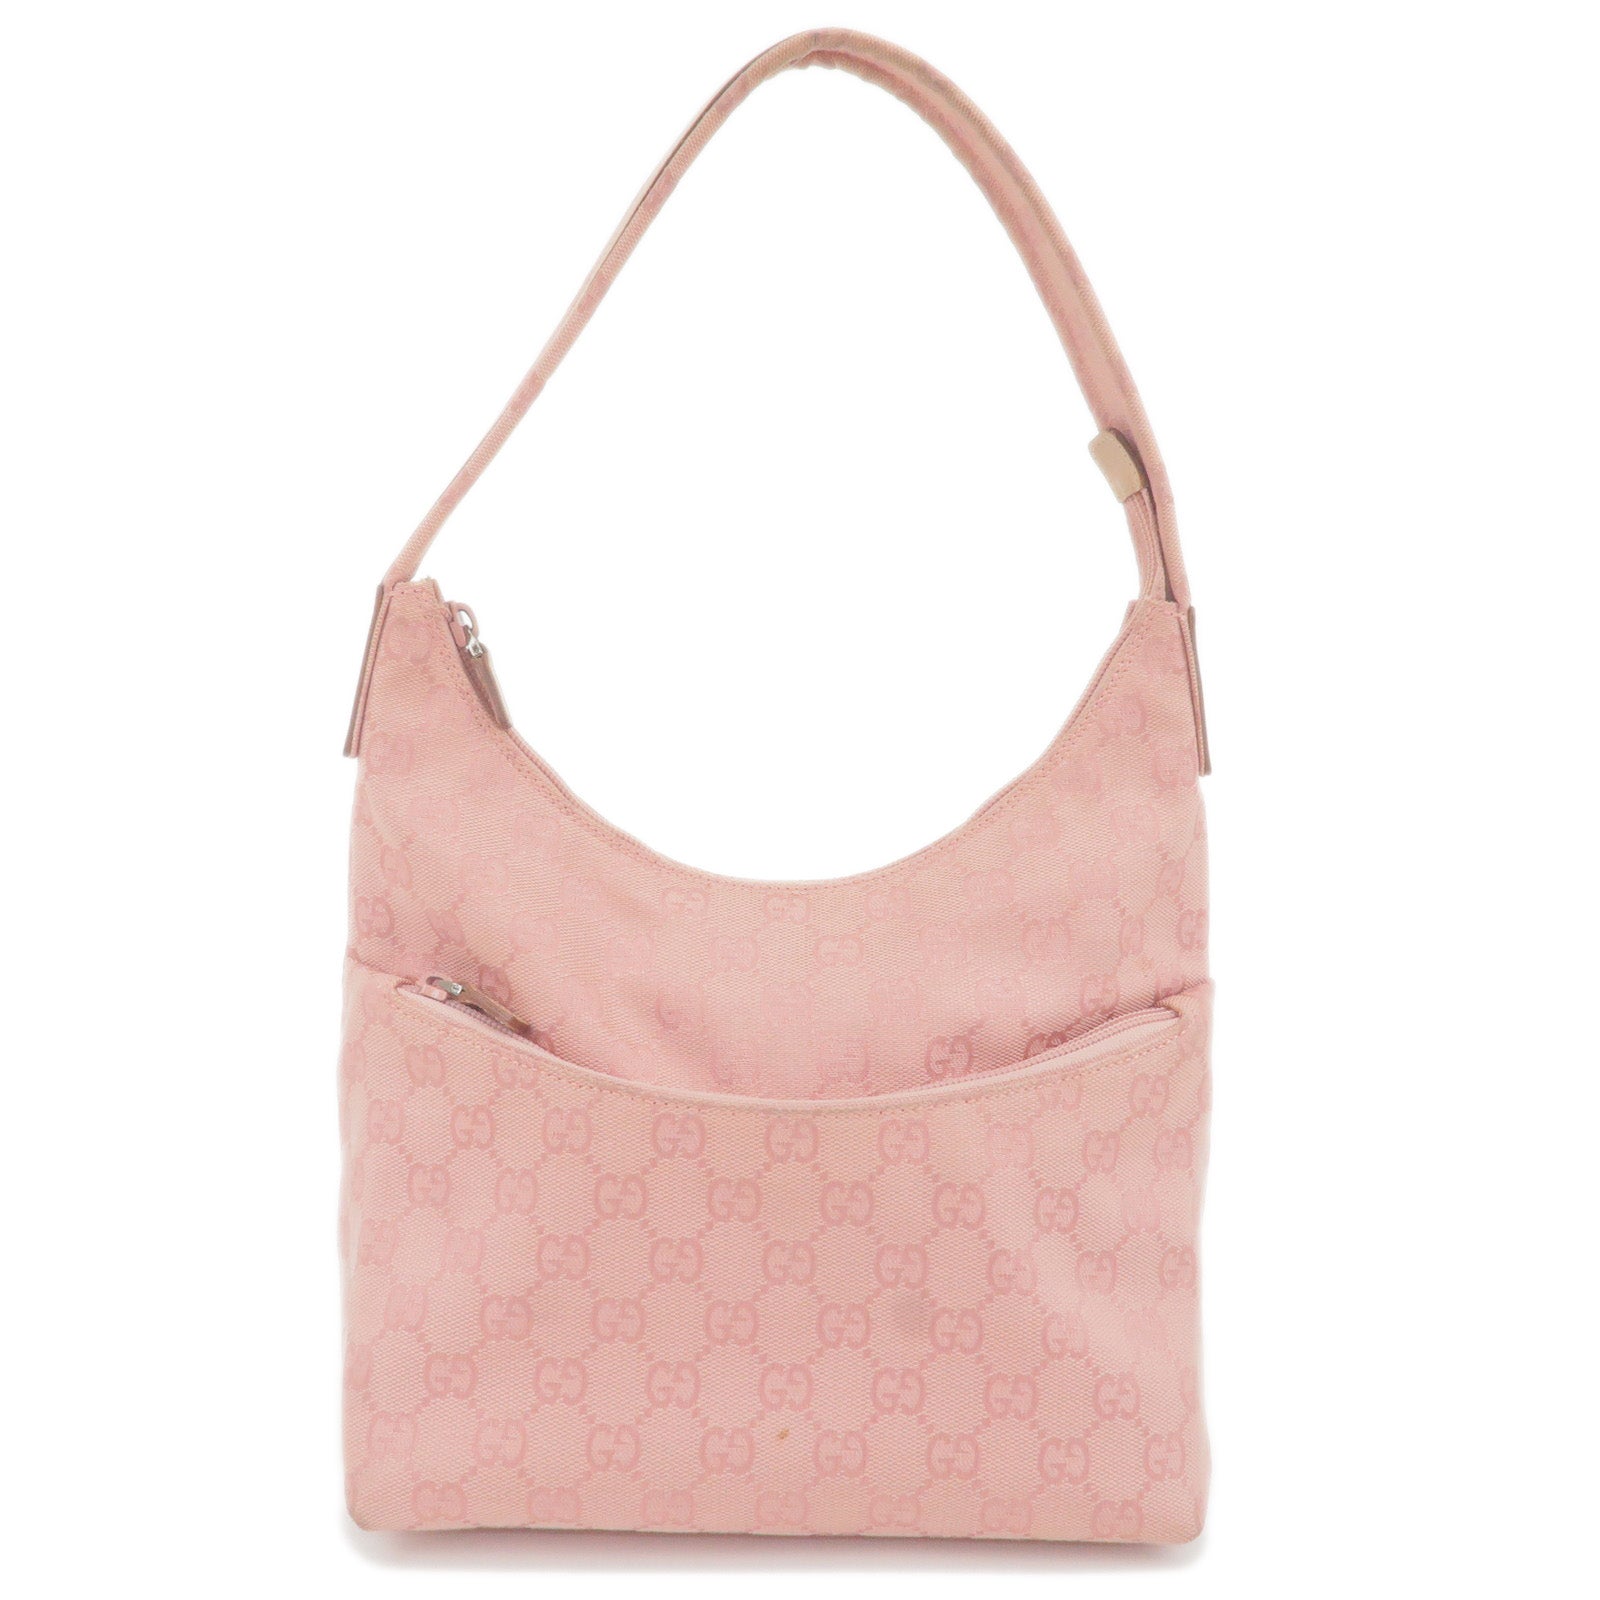 GUCCI-GG-Canvas-Leather-Shoulder-Bag-Hand-Bag-Pink-001.3386